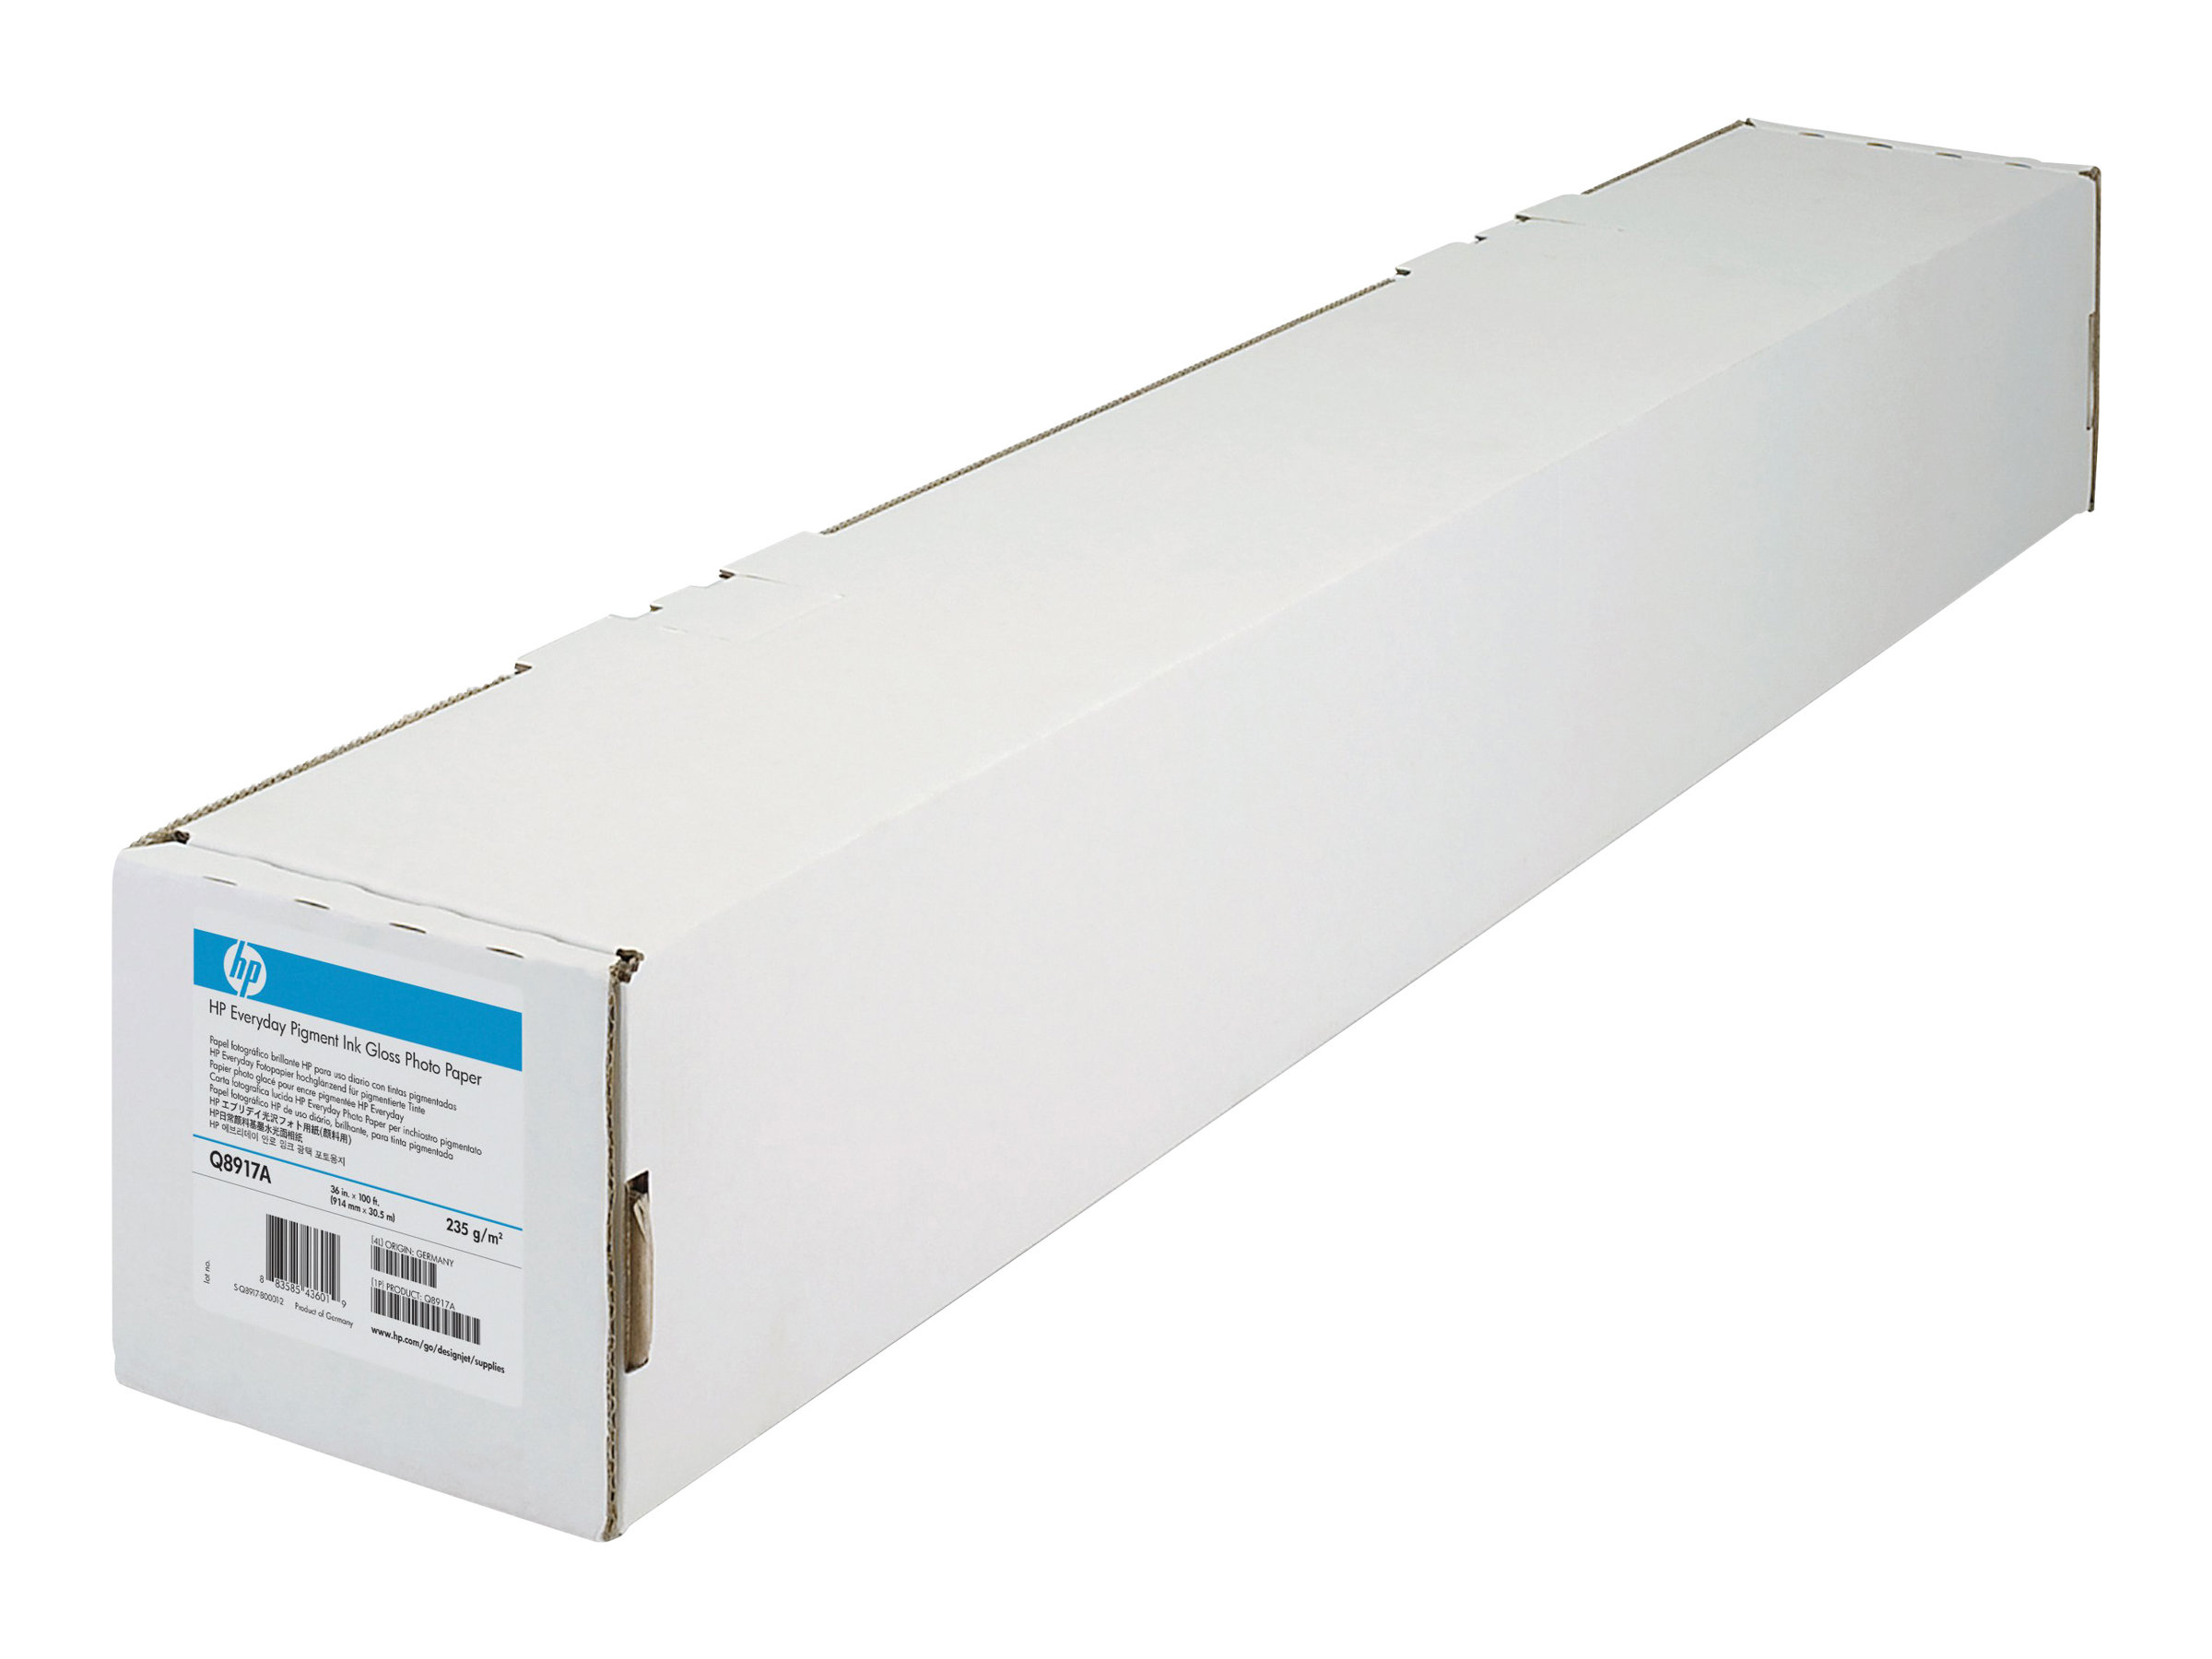 HP Gestrichenes Papier schwer - 610 mm x 30,5 m (24 x 100 Fuß), 30,5 m, 11,1 cm (4.38 Zoll), 163 µm, 130 g/m²